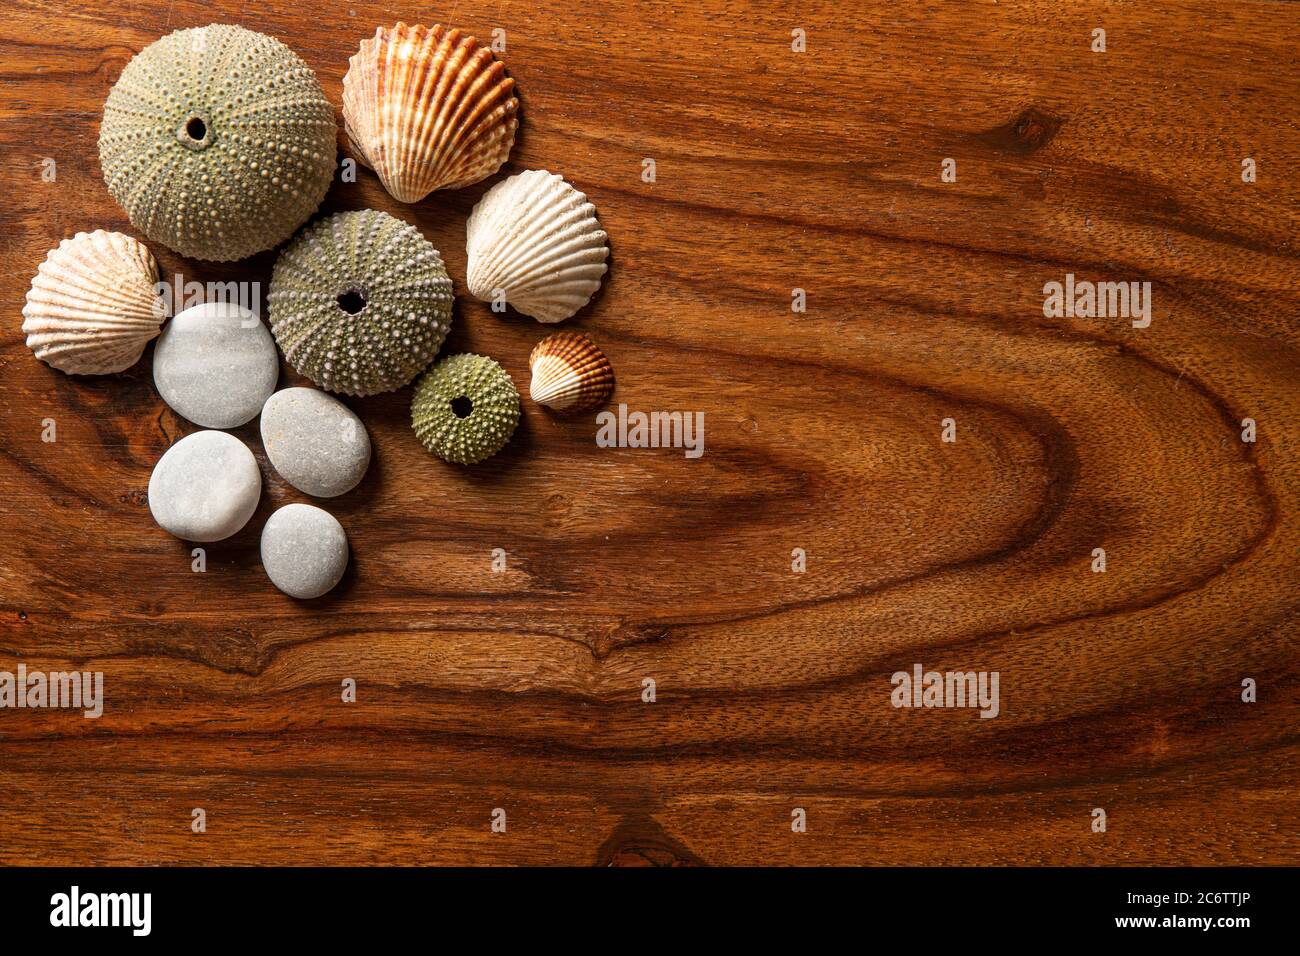 Textura de madera oscura para fondo con conchas marinas y guijarros para decoración Foto de stock